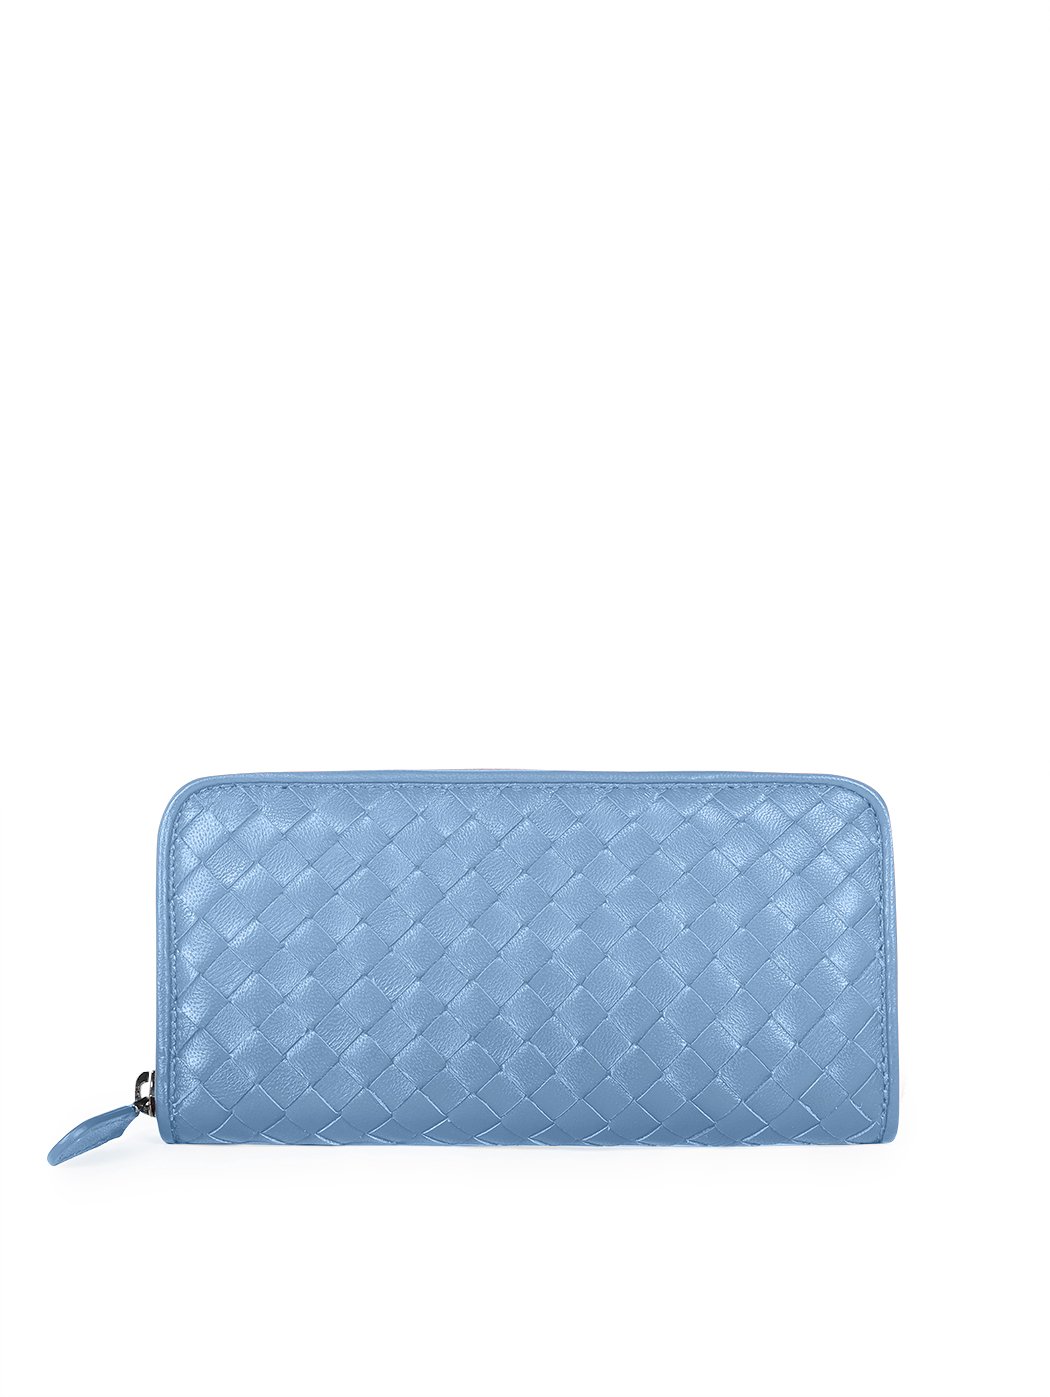 Плетеный кошелек на молнии коллекции Intrecci светло - голубого цвета